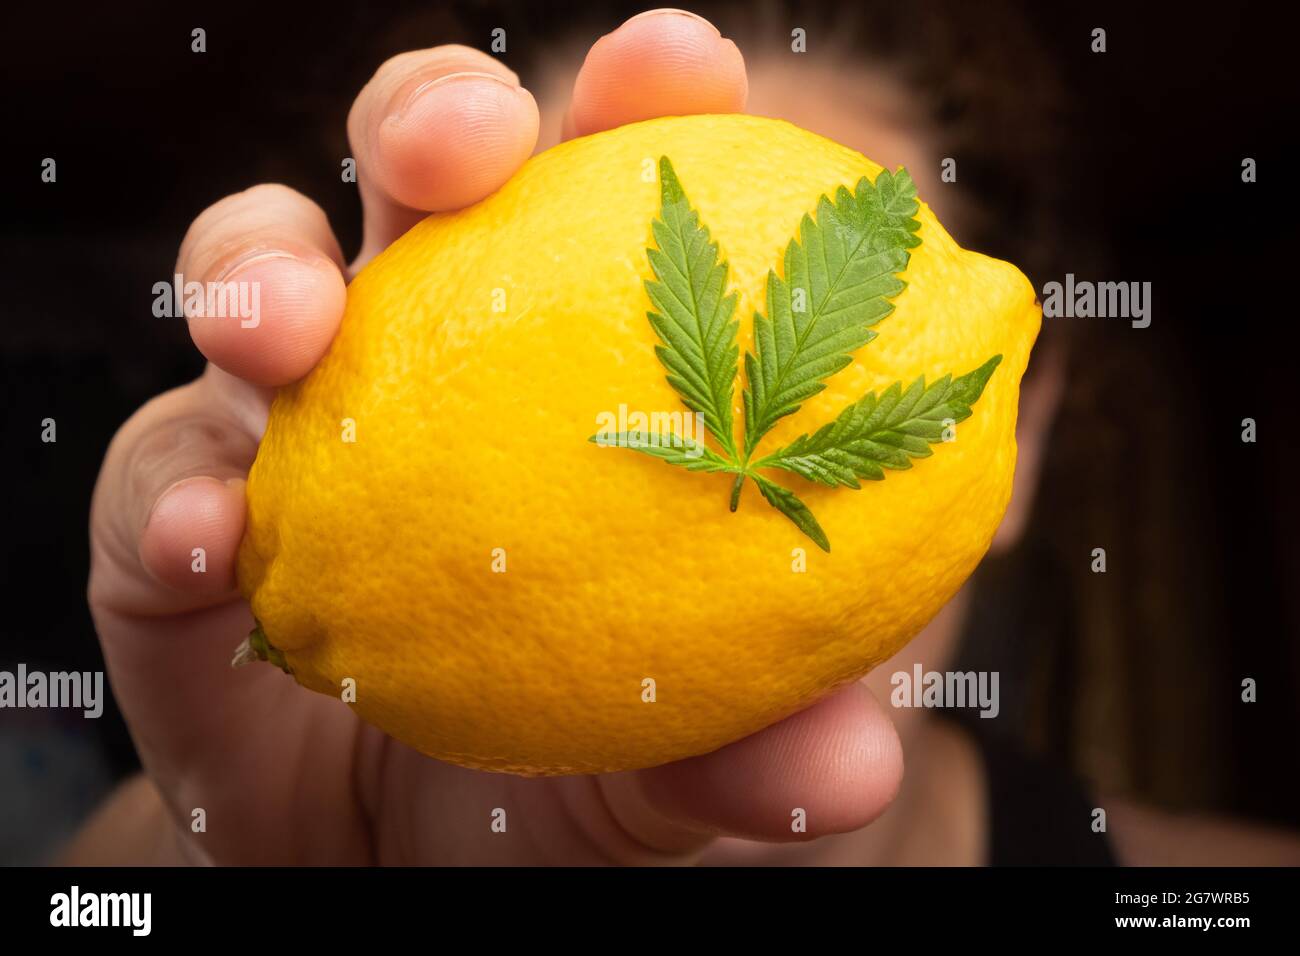 citron avec feuille de marijuana à la main en gros plan, variété de cannabis avec saveur de citron. Banque D'Images